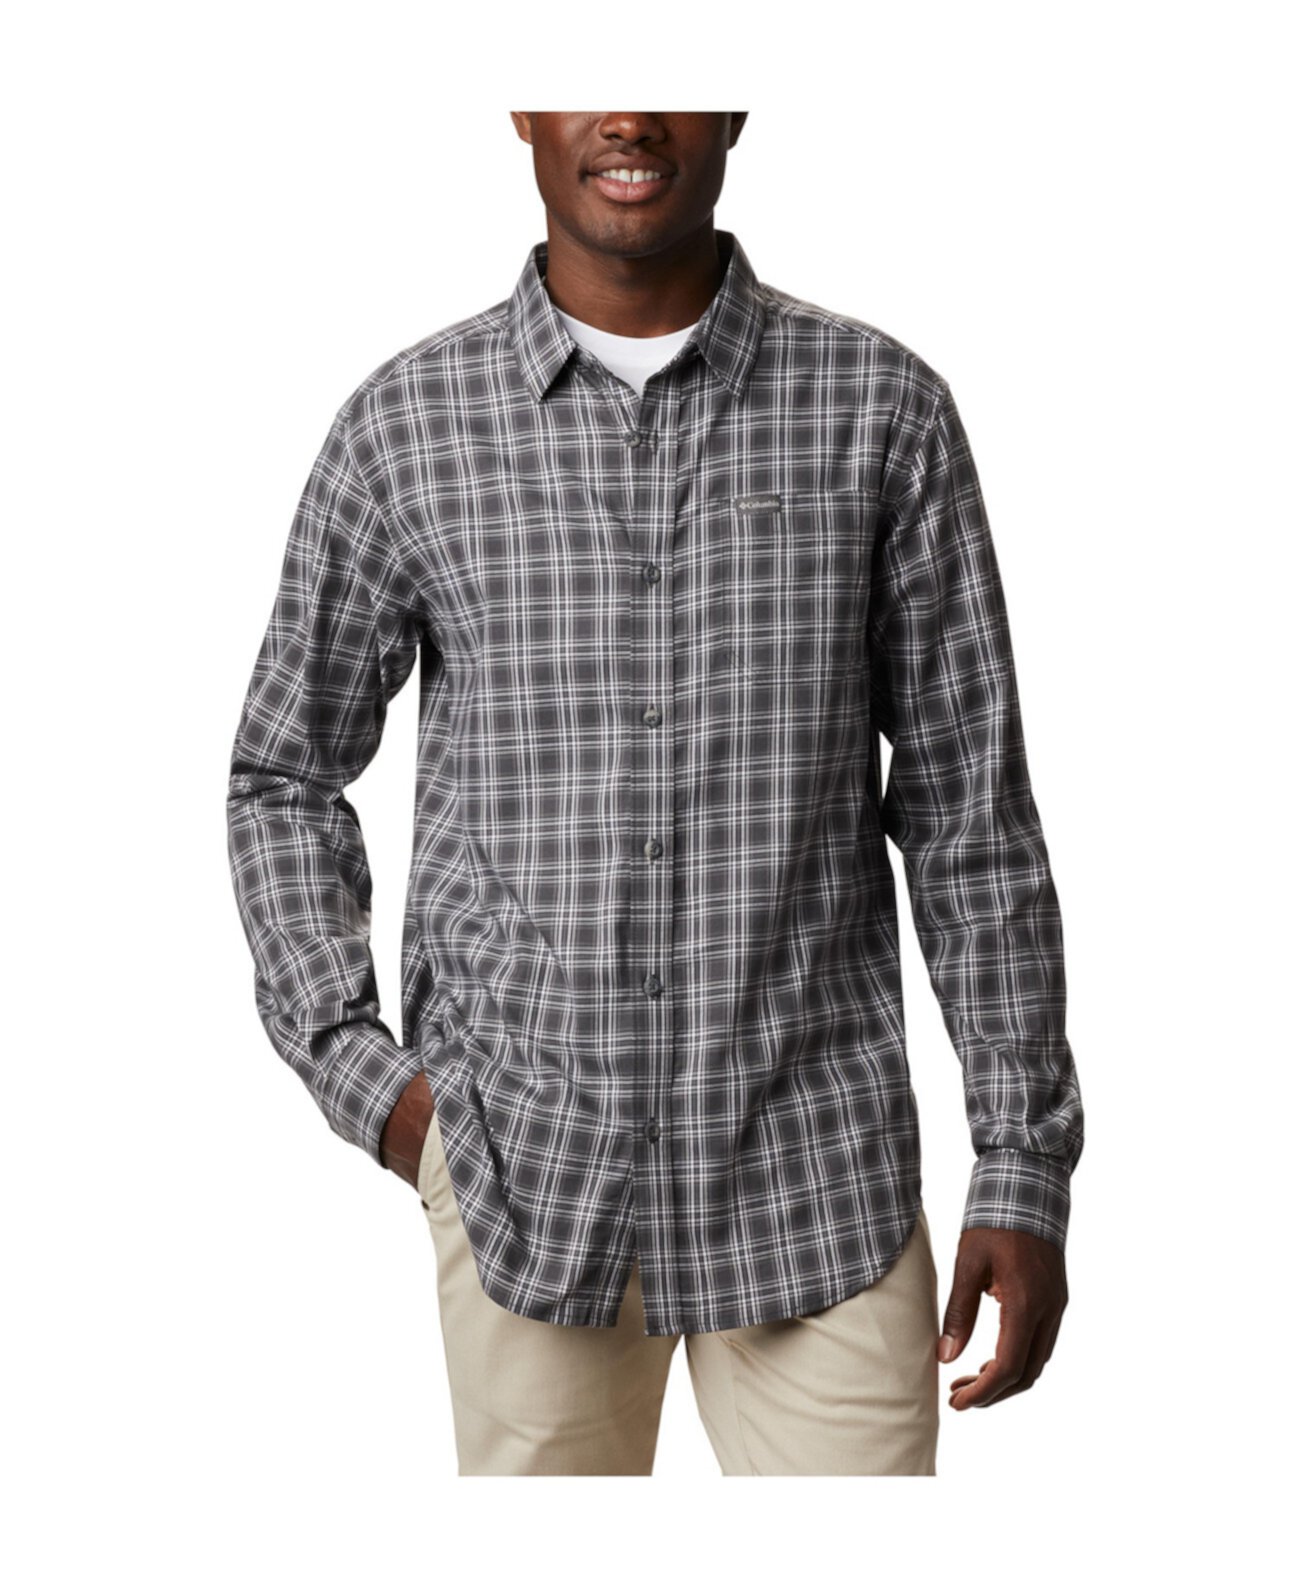 Мужская рубашка в клетку современного классического кроя Big & Tall Vapor Ridge ™ III Columbia